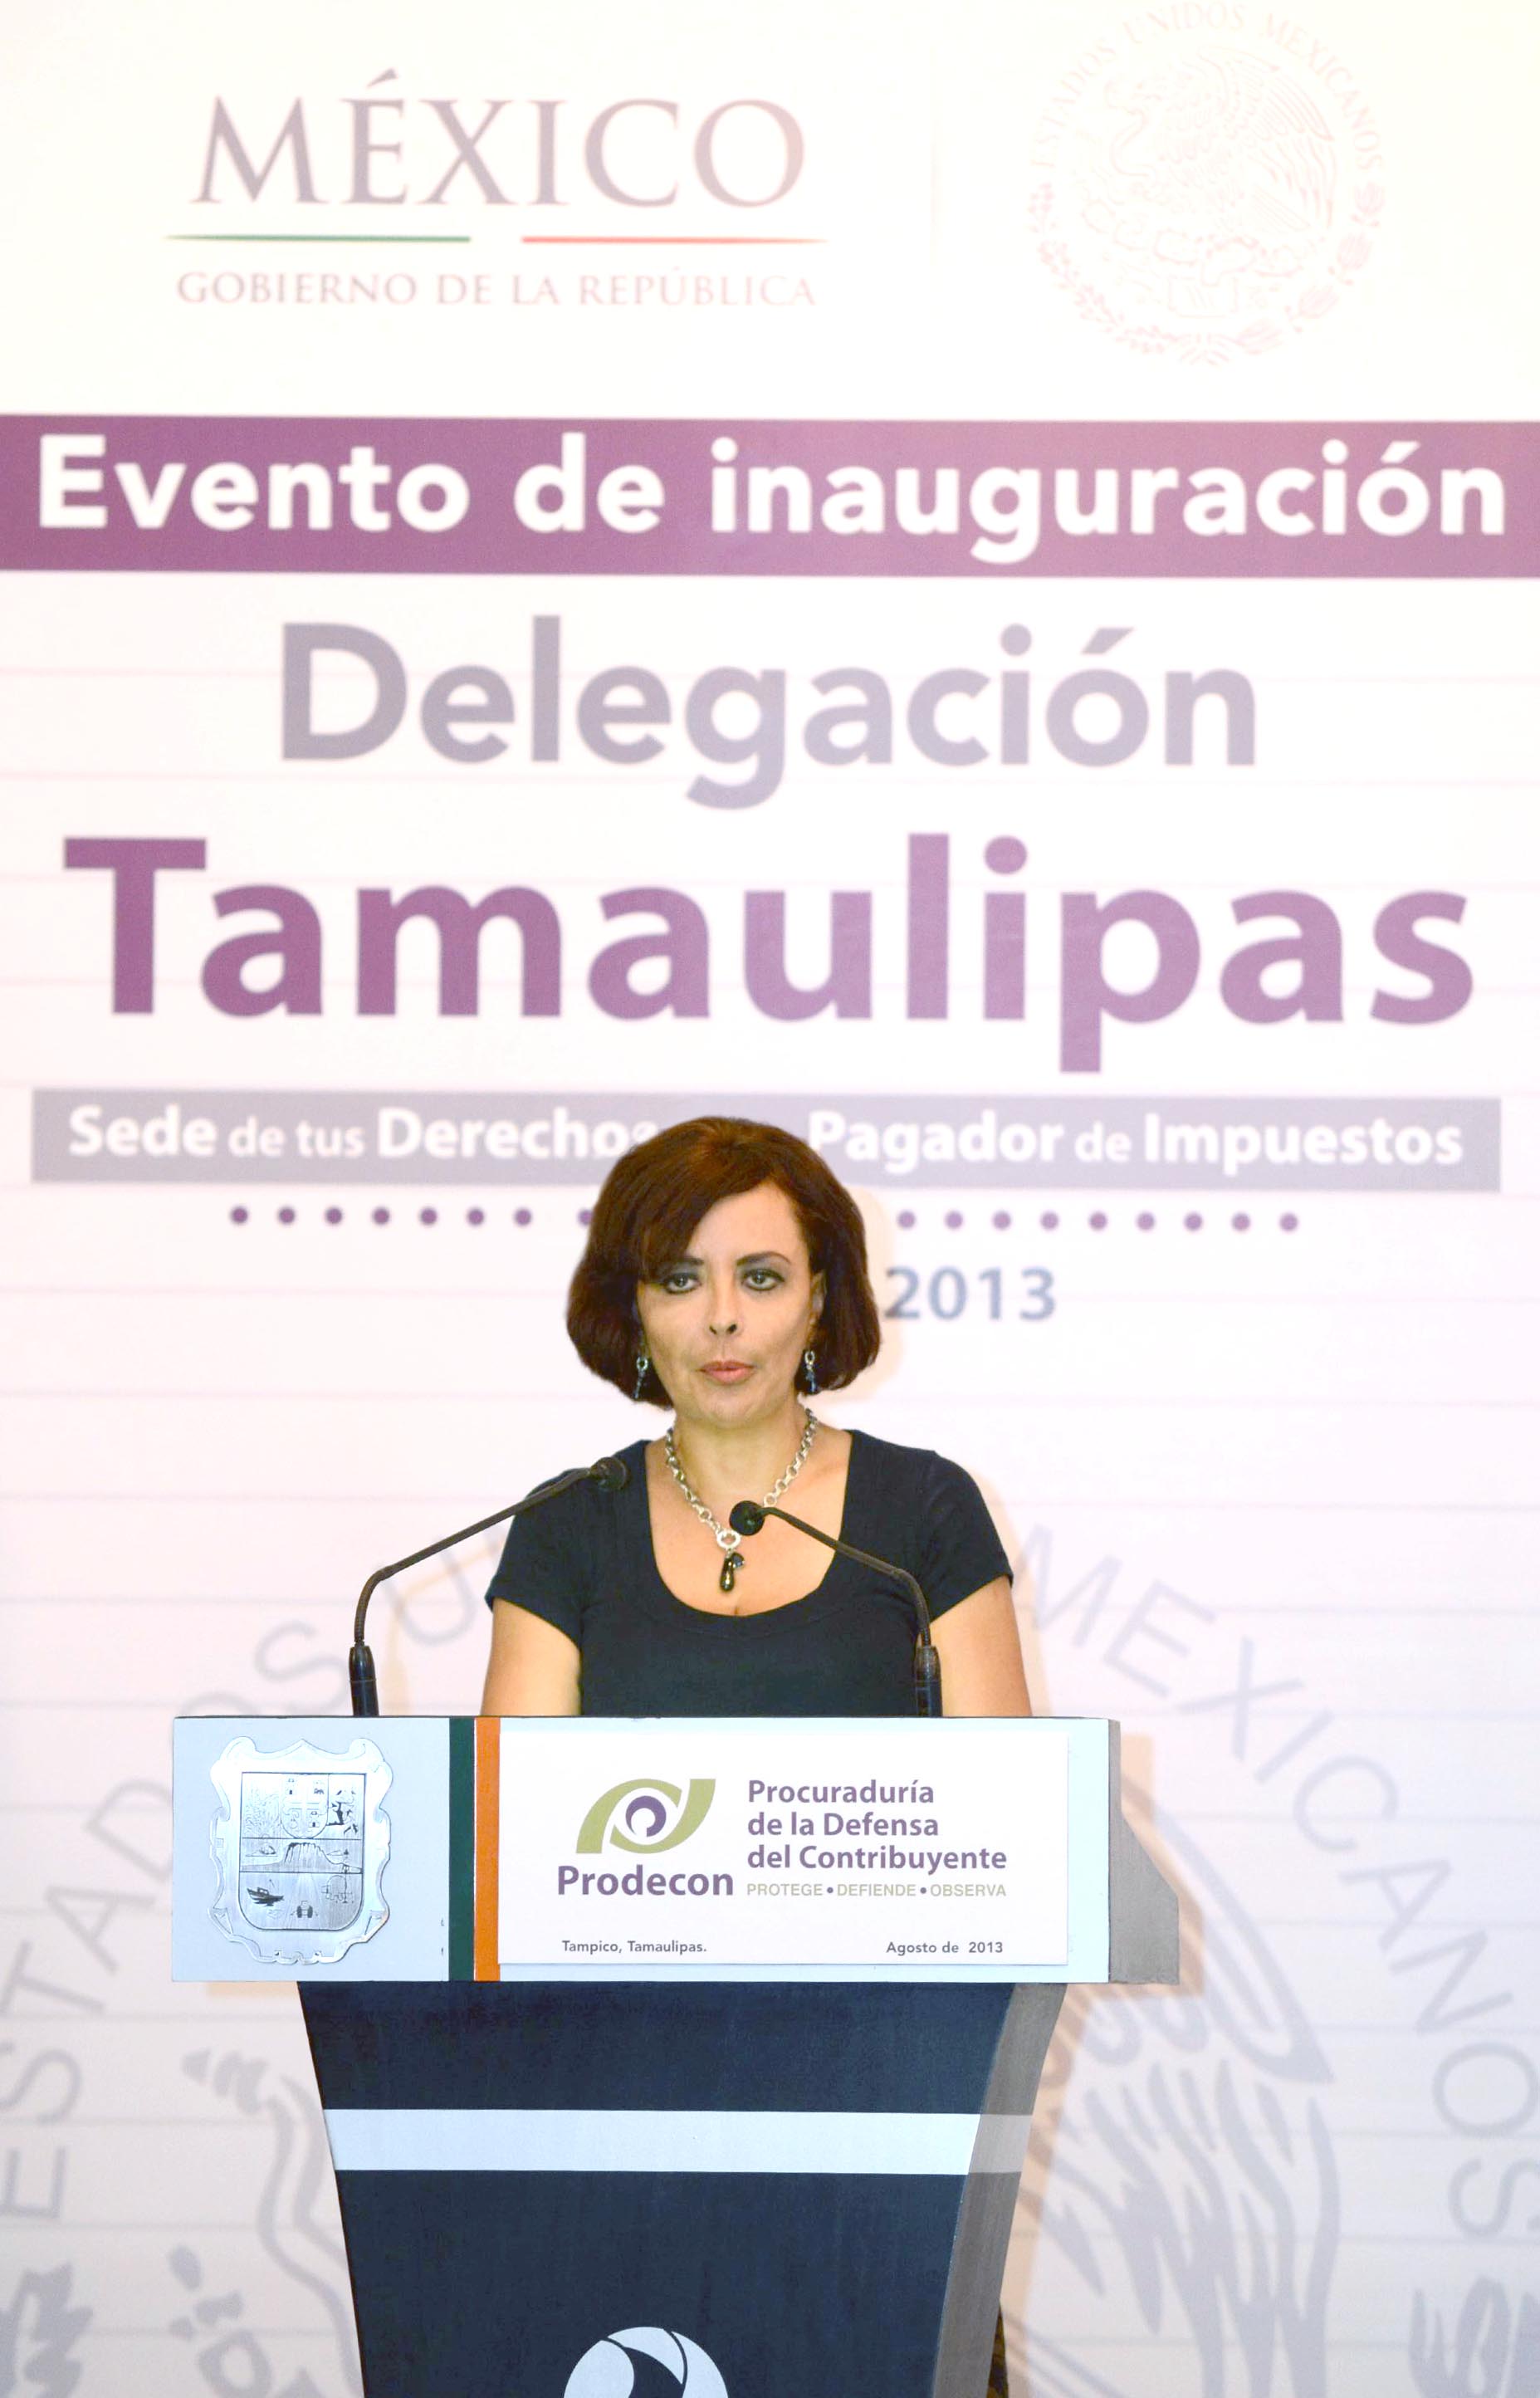 La Procuradora de la Defensa del Contribuyente, Diana Bernal Ladrón de Guevara, en su discurso de bienvenida, destacó que la Delegación Tamaulipas podrá brindar a más de un millón de contribuyentes tamaulipecos la protección más amplia a sus derechos fundamentales.